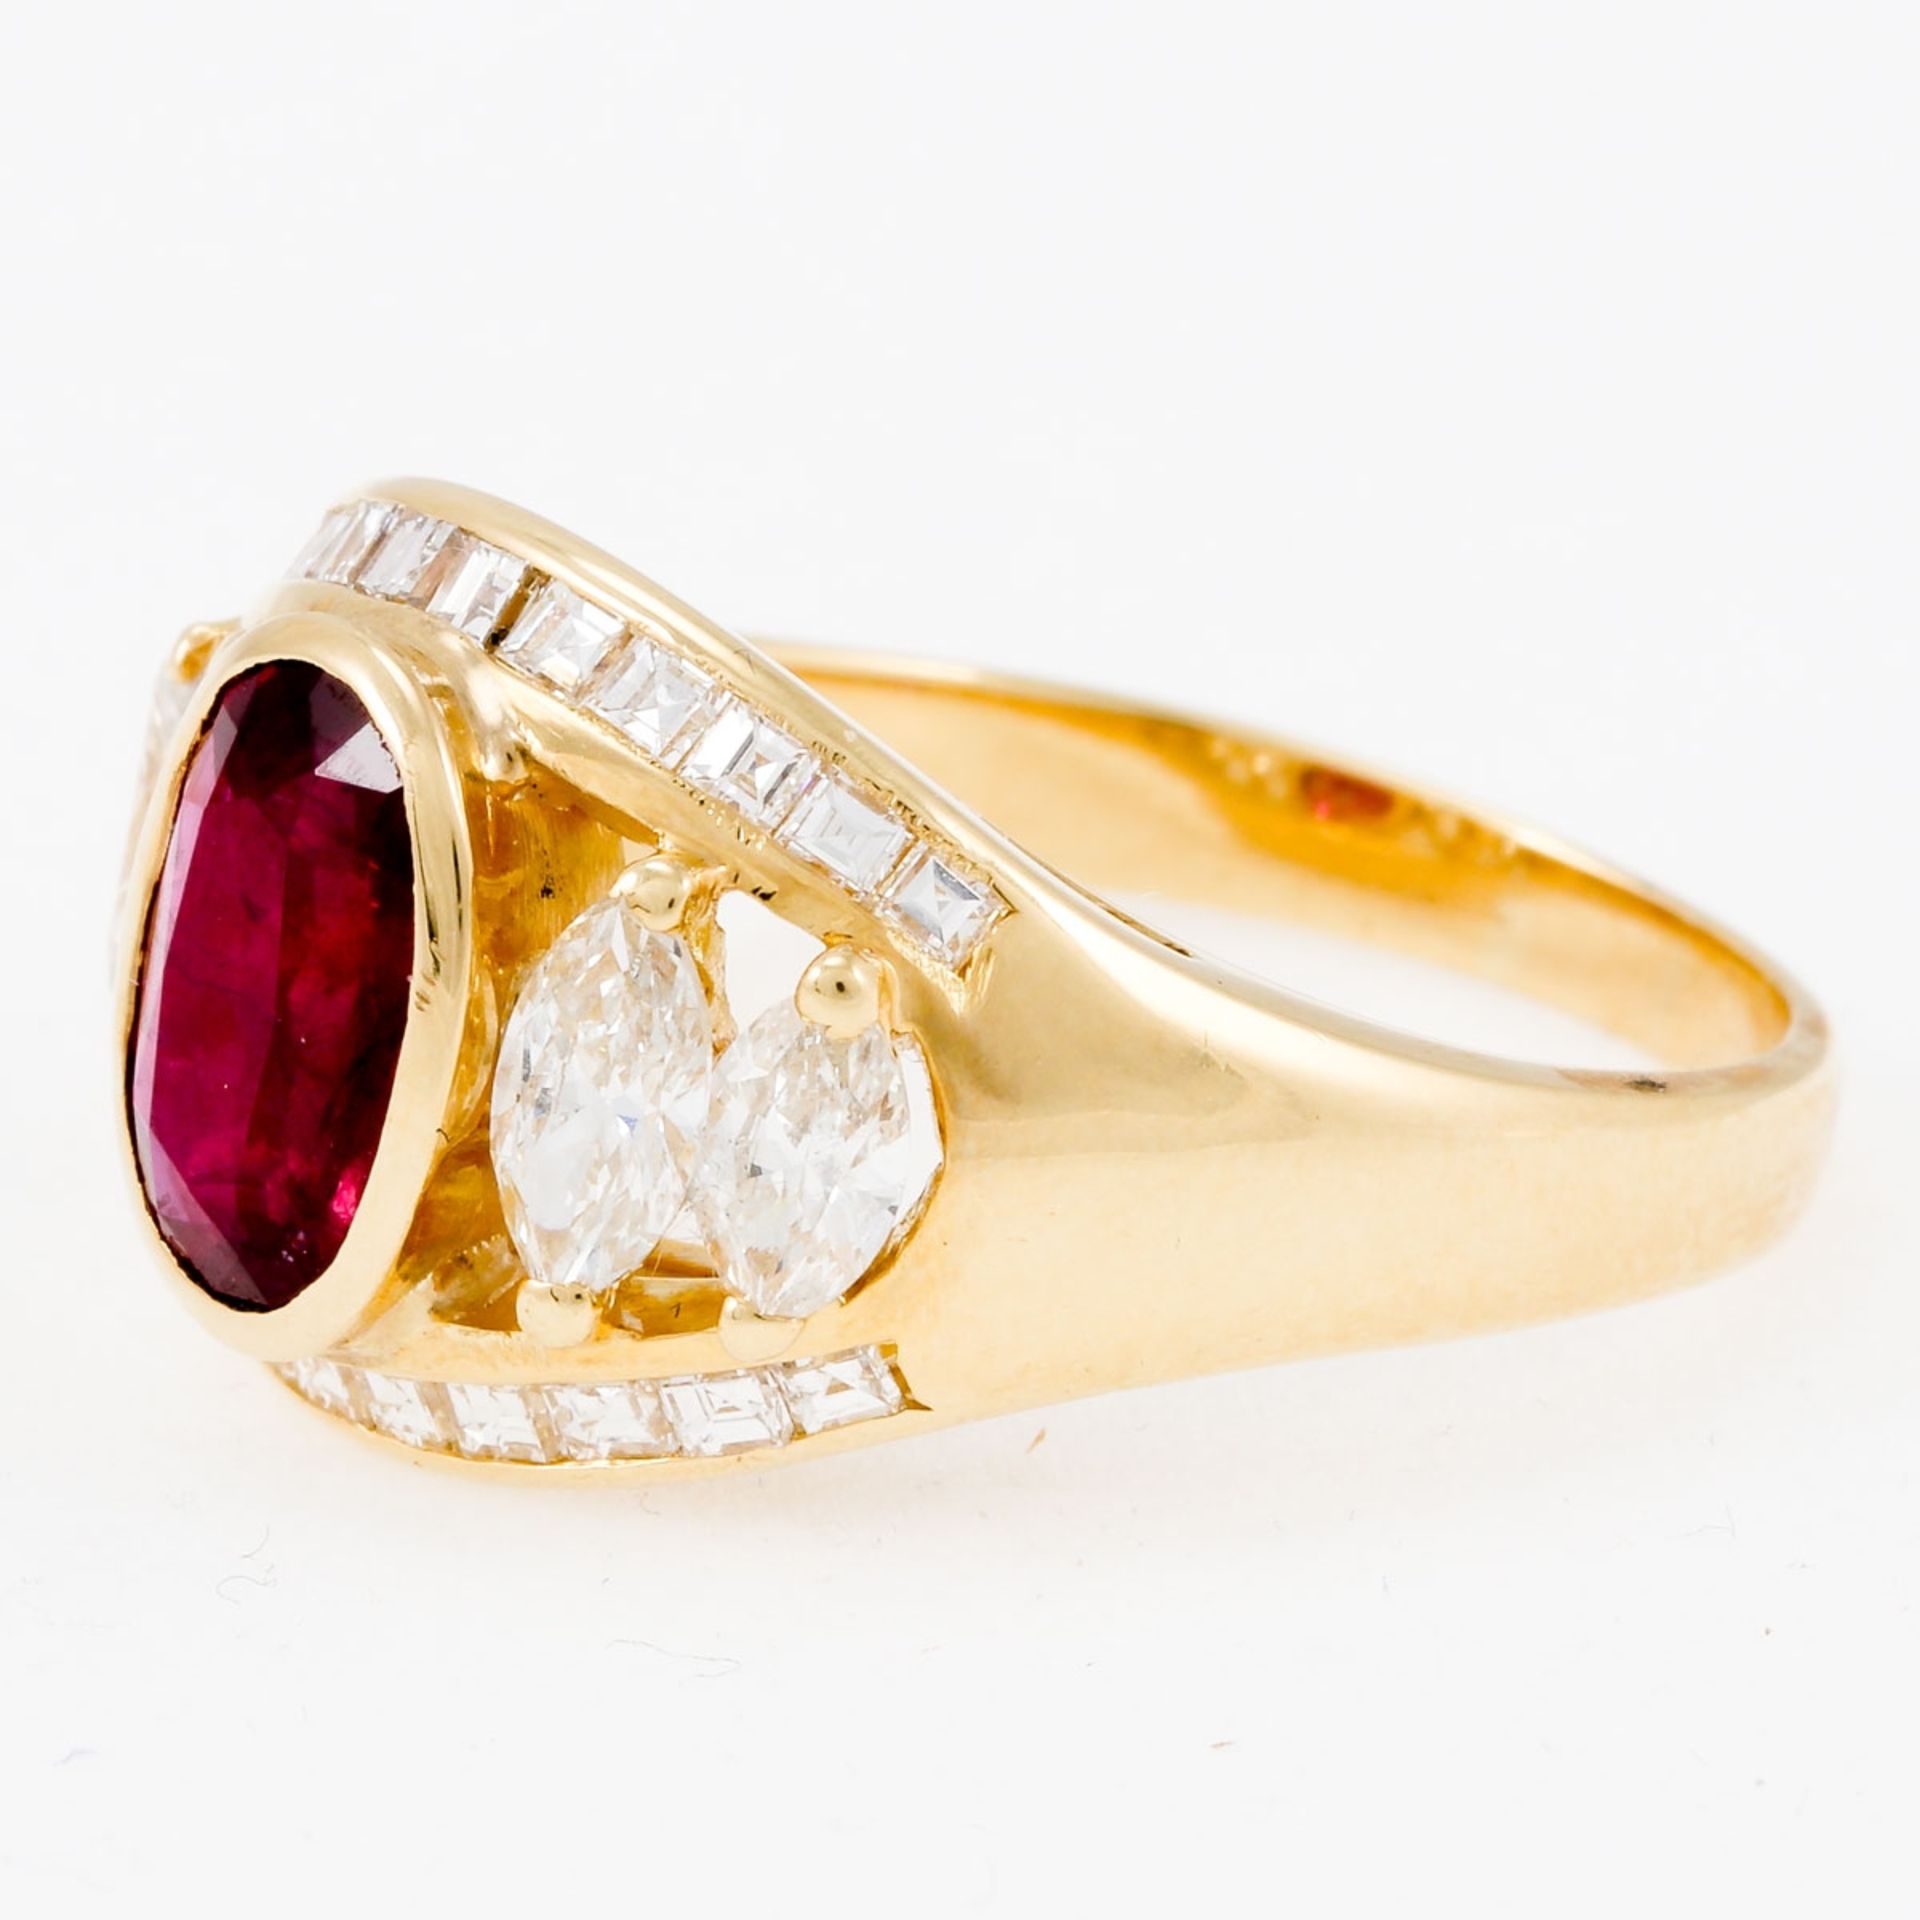 Rubinring mit Diamanten 750/- Gelbgold, ungestemp., geprüft. Gewicht: 10 g. 1 Rubin im Ovals - Image 2 of 2